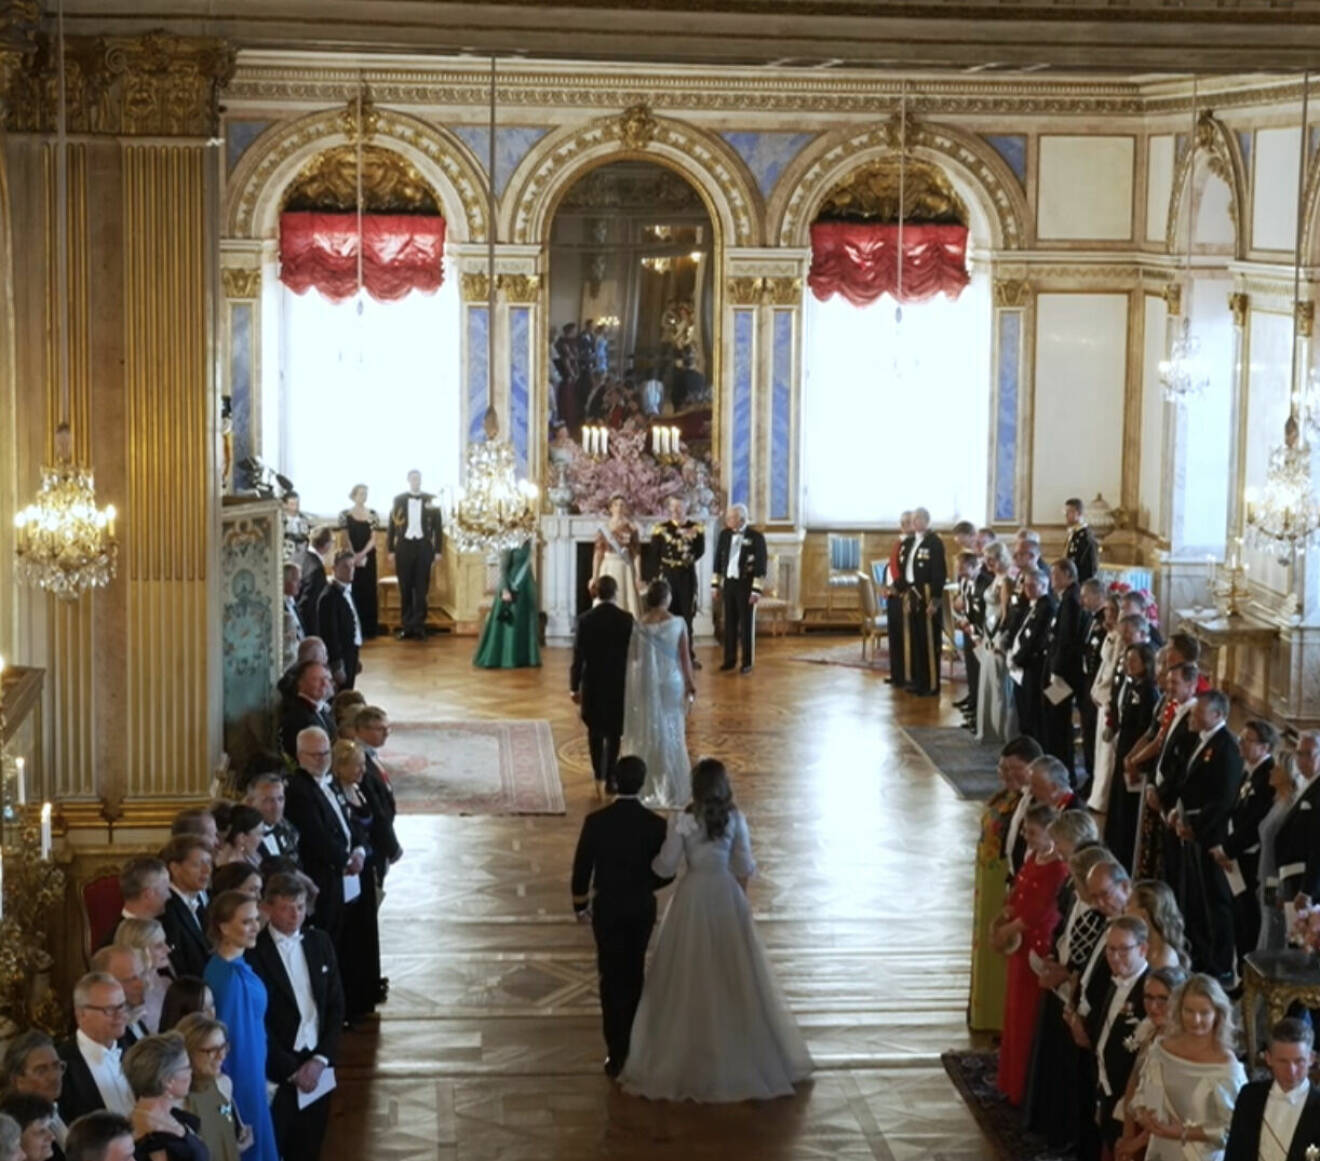 Galamiddag för kung Mary och drottning Frederik – gästerna i Vita havet